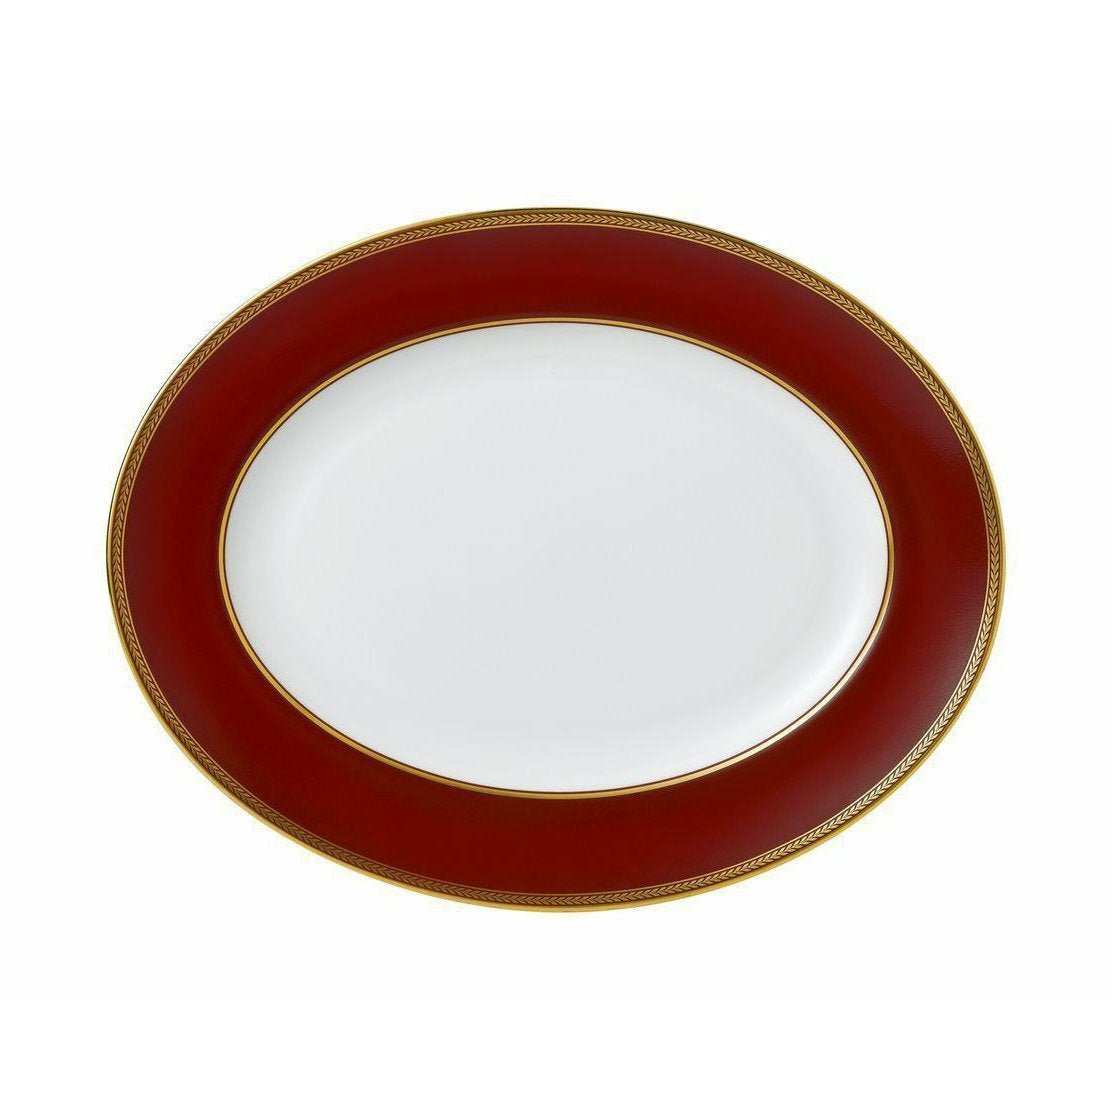 Wedgwood Renaissance rode ovale bovenkant 35 cm